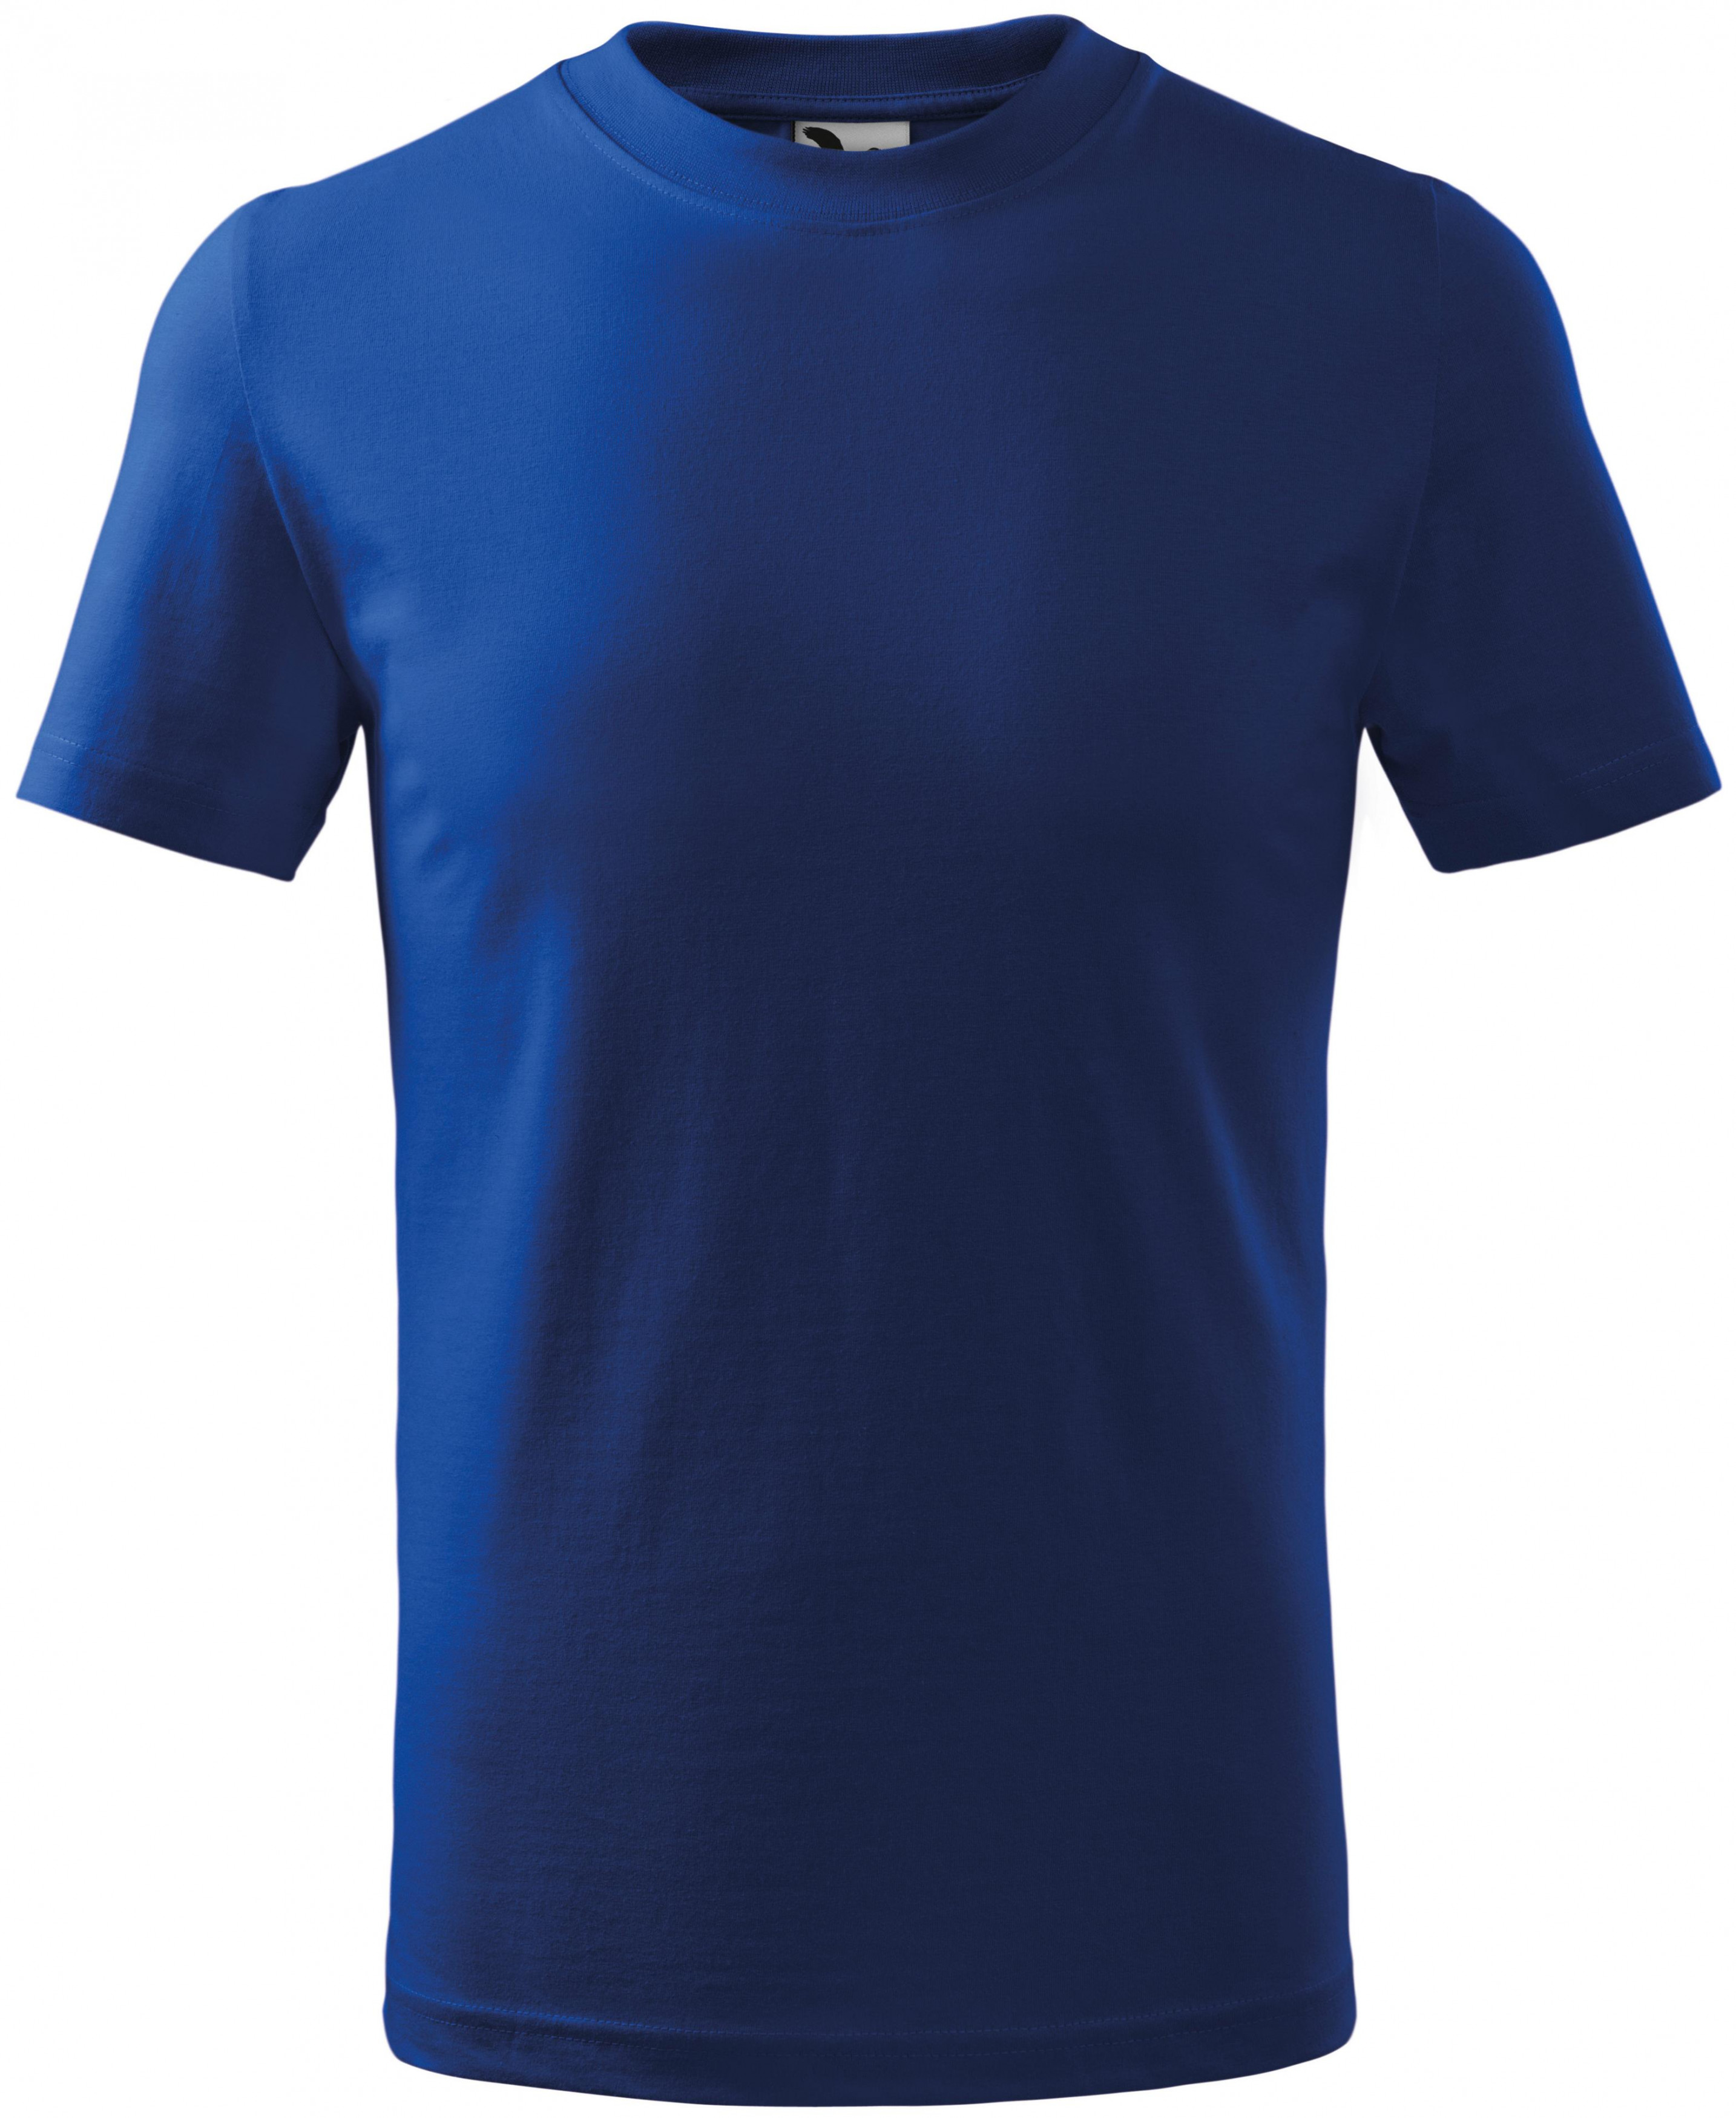 Detské tričko jednoduché, kráľovská modrá, 146cm / 10rokov